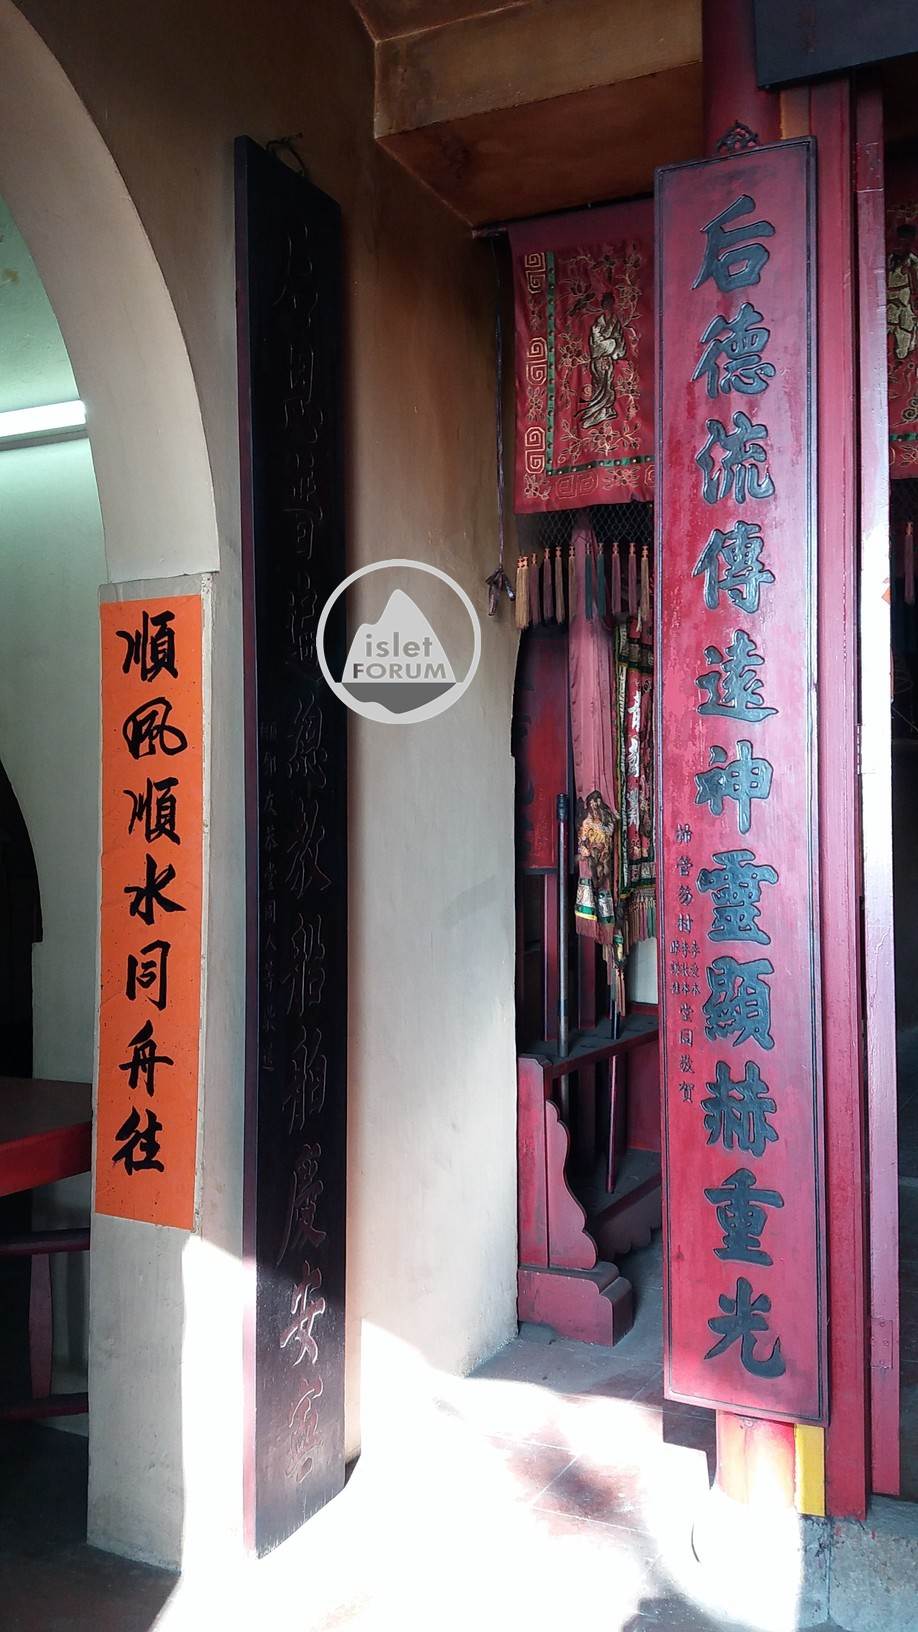 龍鼓灘天后廟lung kwu tan tin hau temple (5).jpg